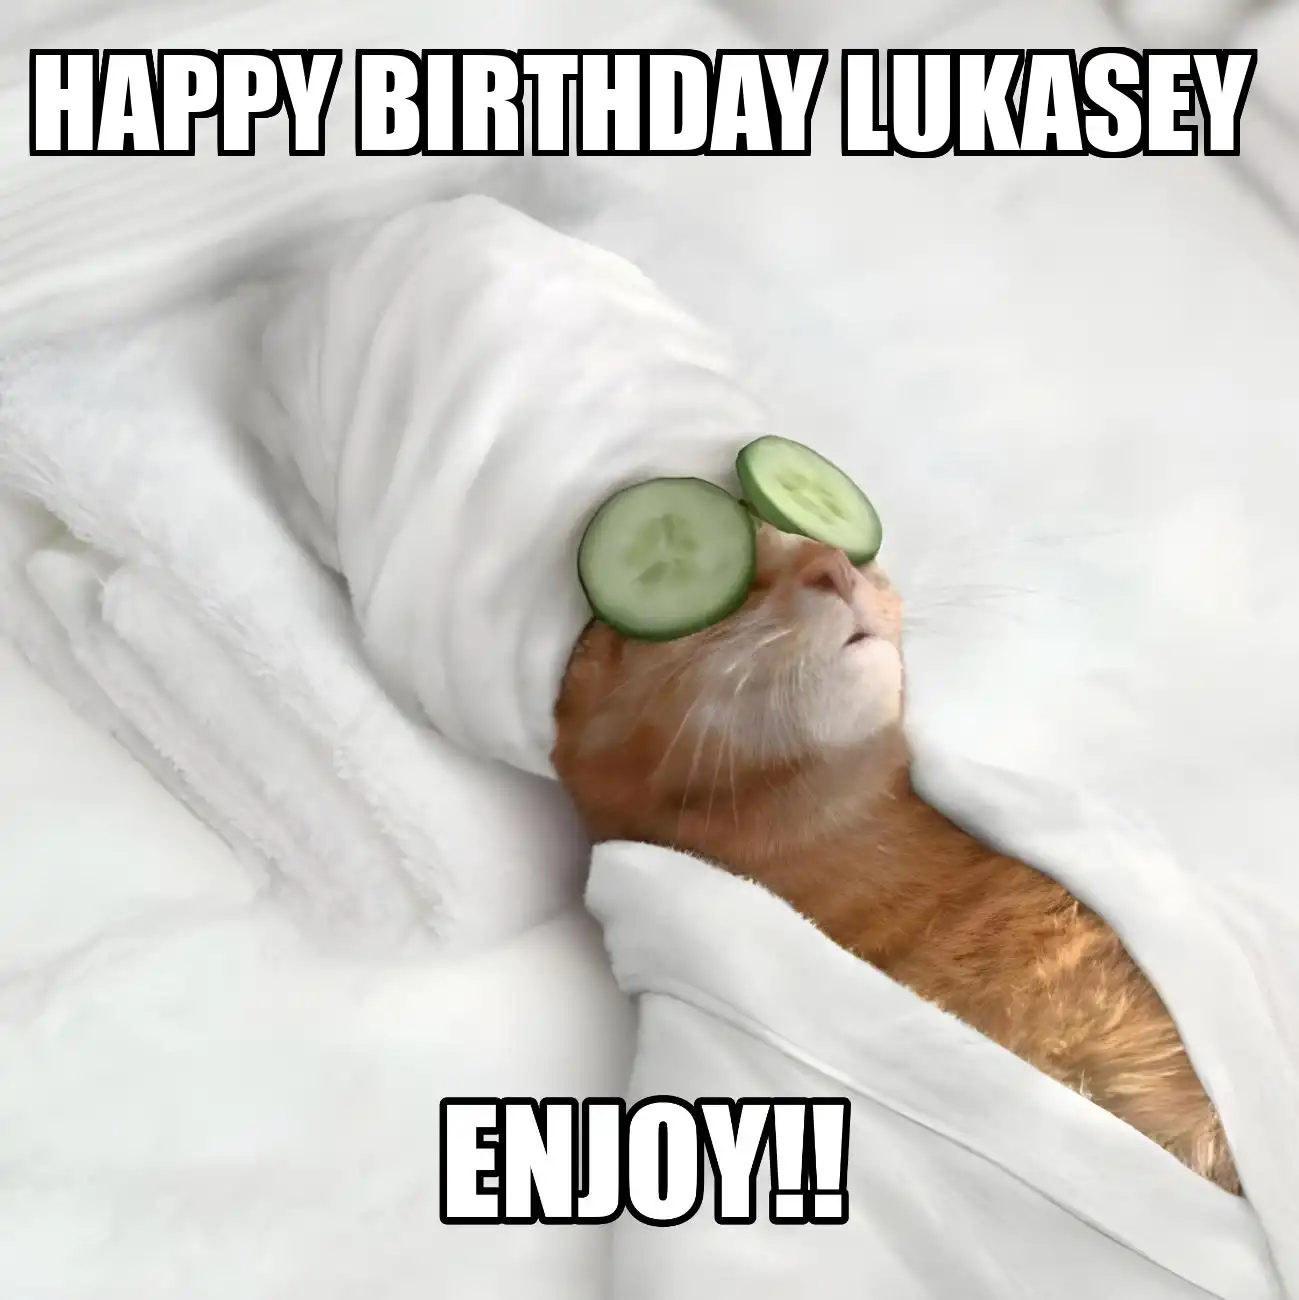 Happy Birthday Lukasey Enjoy Cat Meme